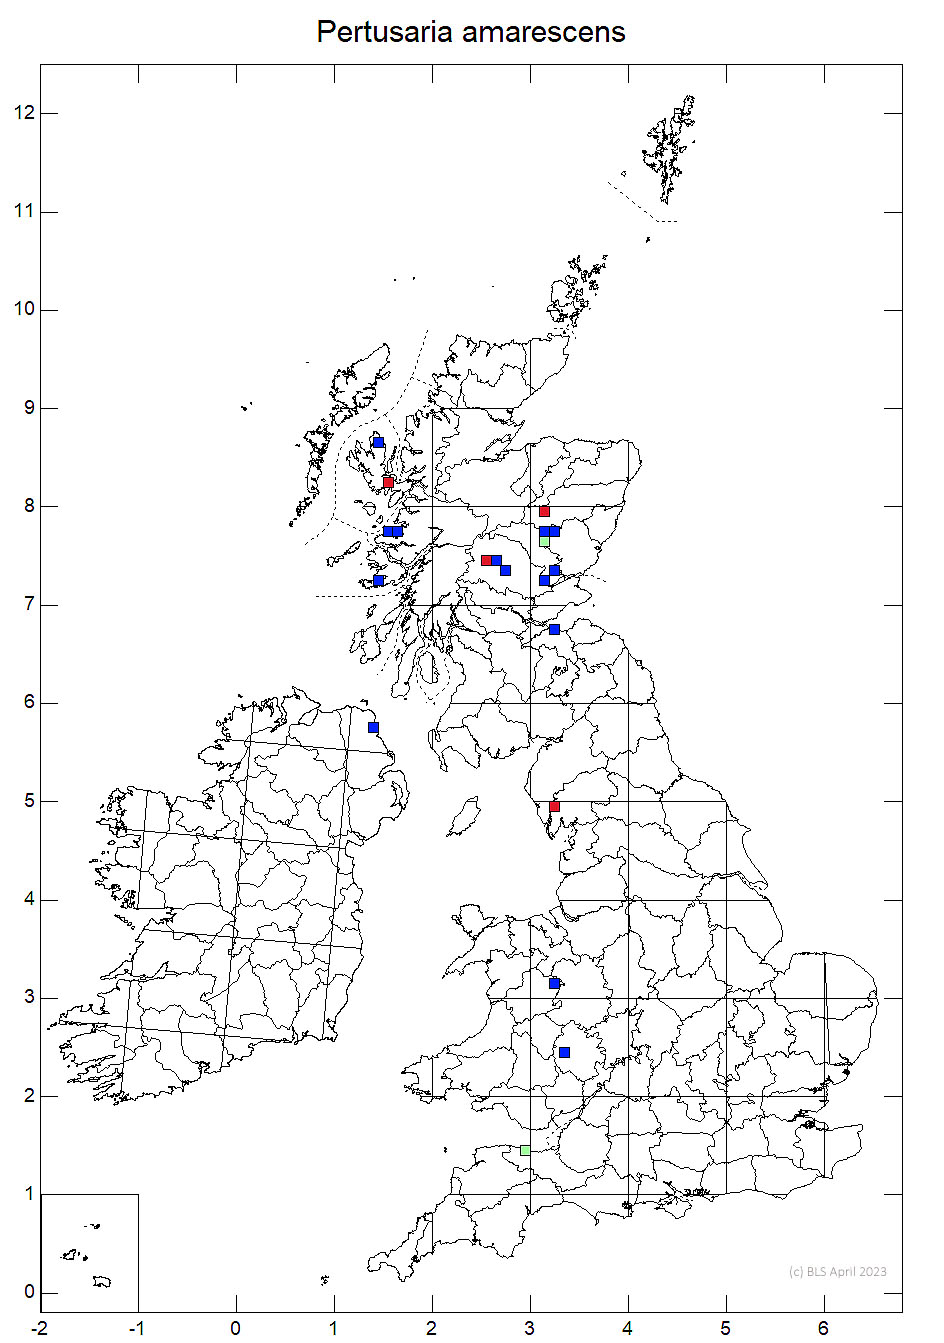 Pertusaria amarescens 10km sq distribution map